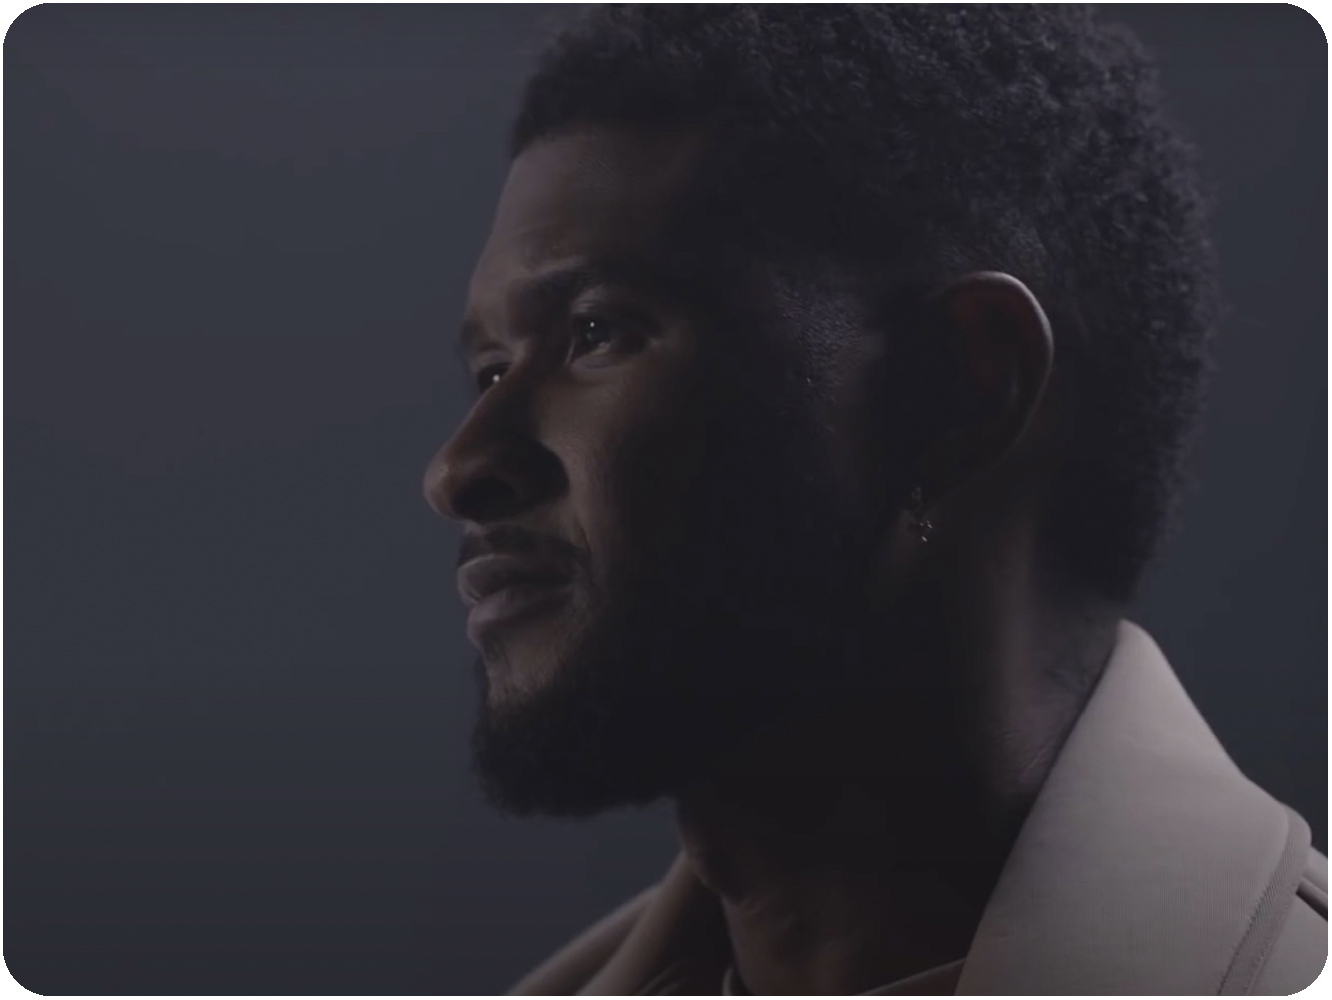  La nueva de Usher, ‘Bad Habits’, es más contagiosa que sus herpes